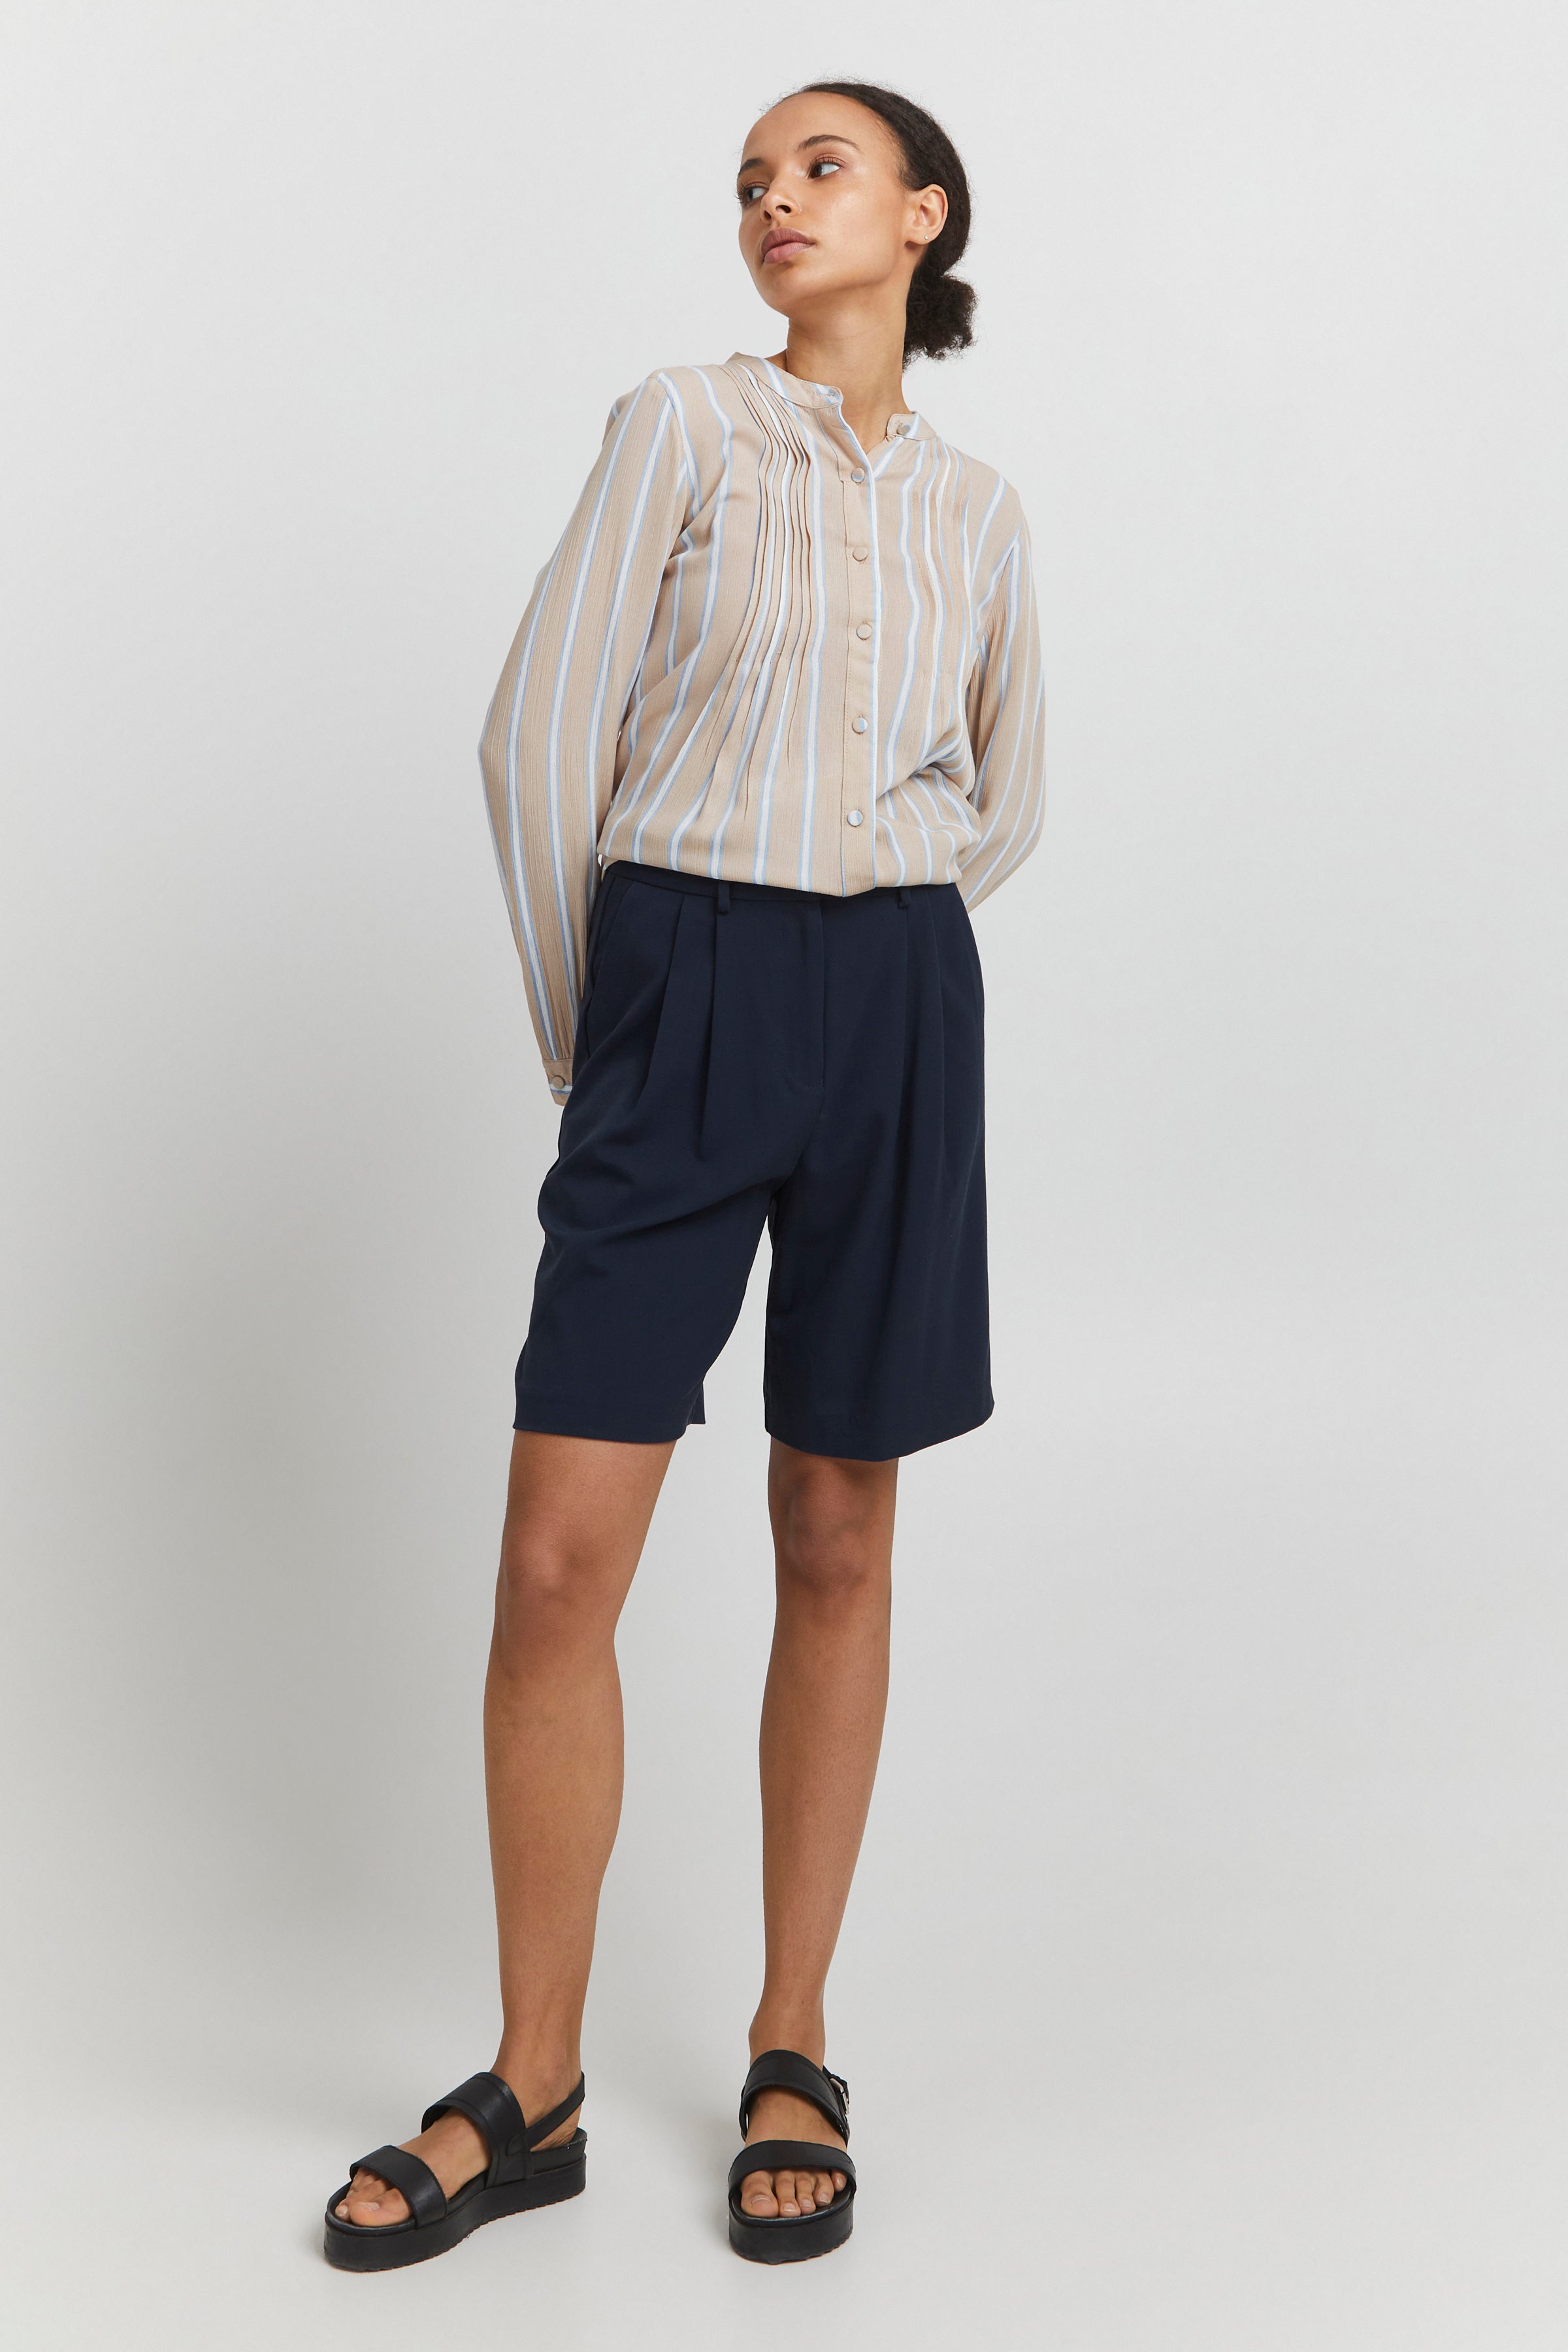 Pixi Shorts (Navy)